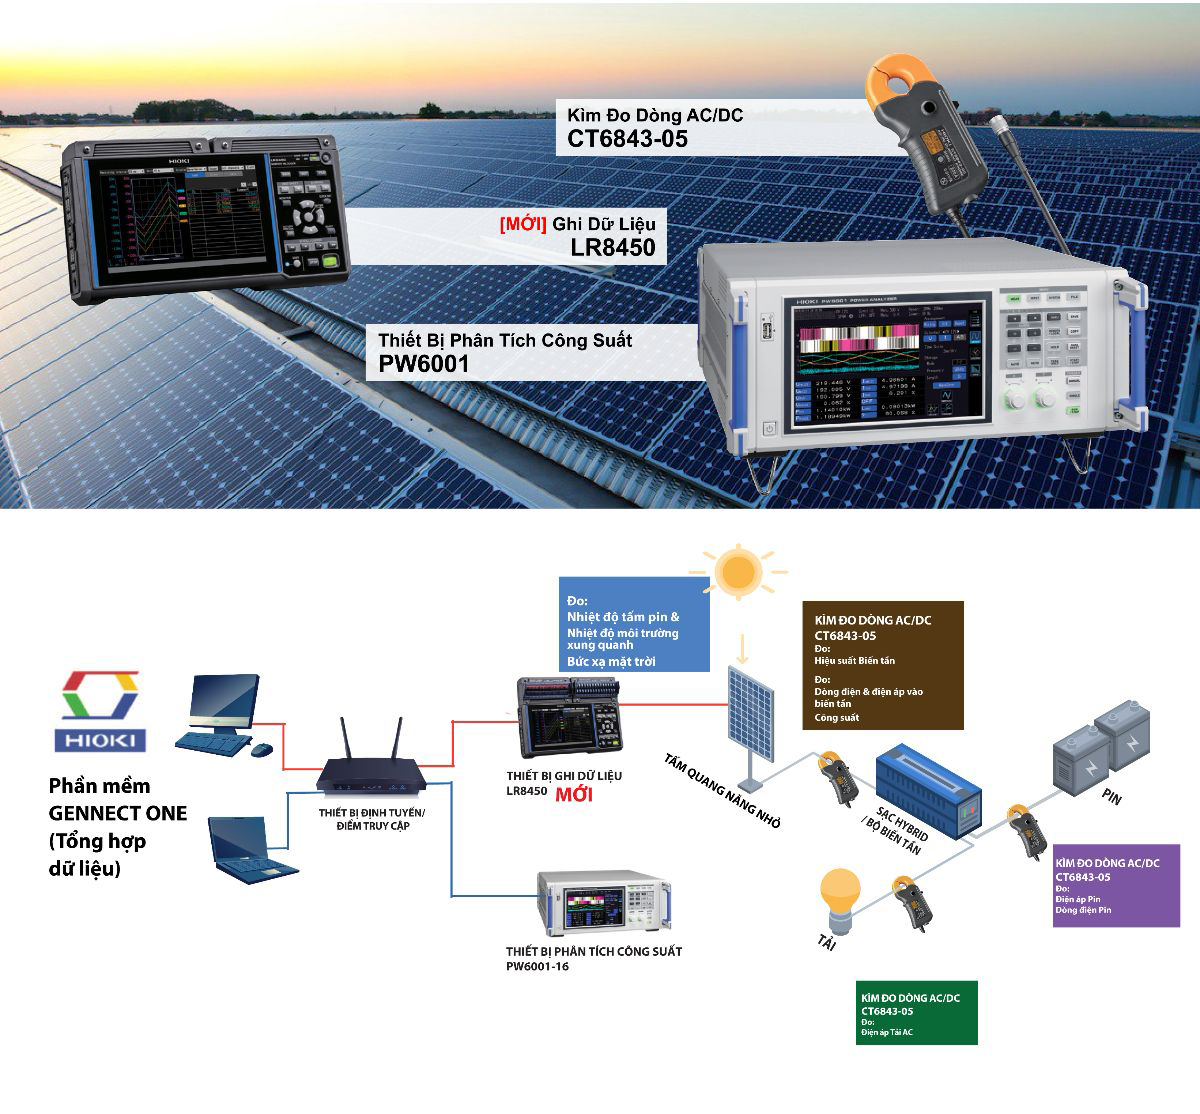 ứng dụng thiết bị hioki để đo và giám sát điện mặt trời